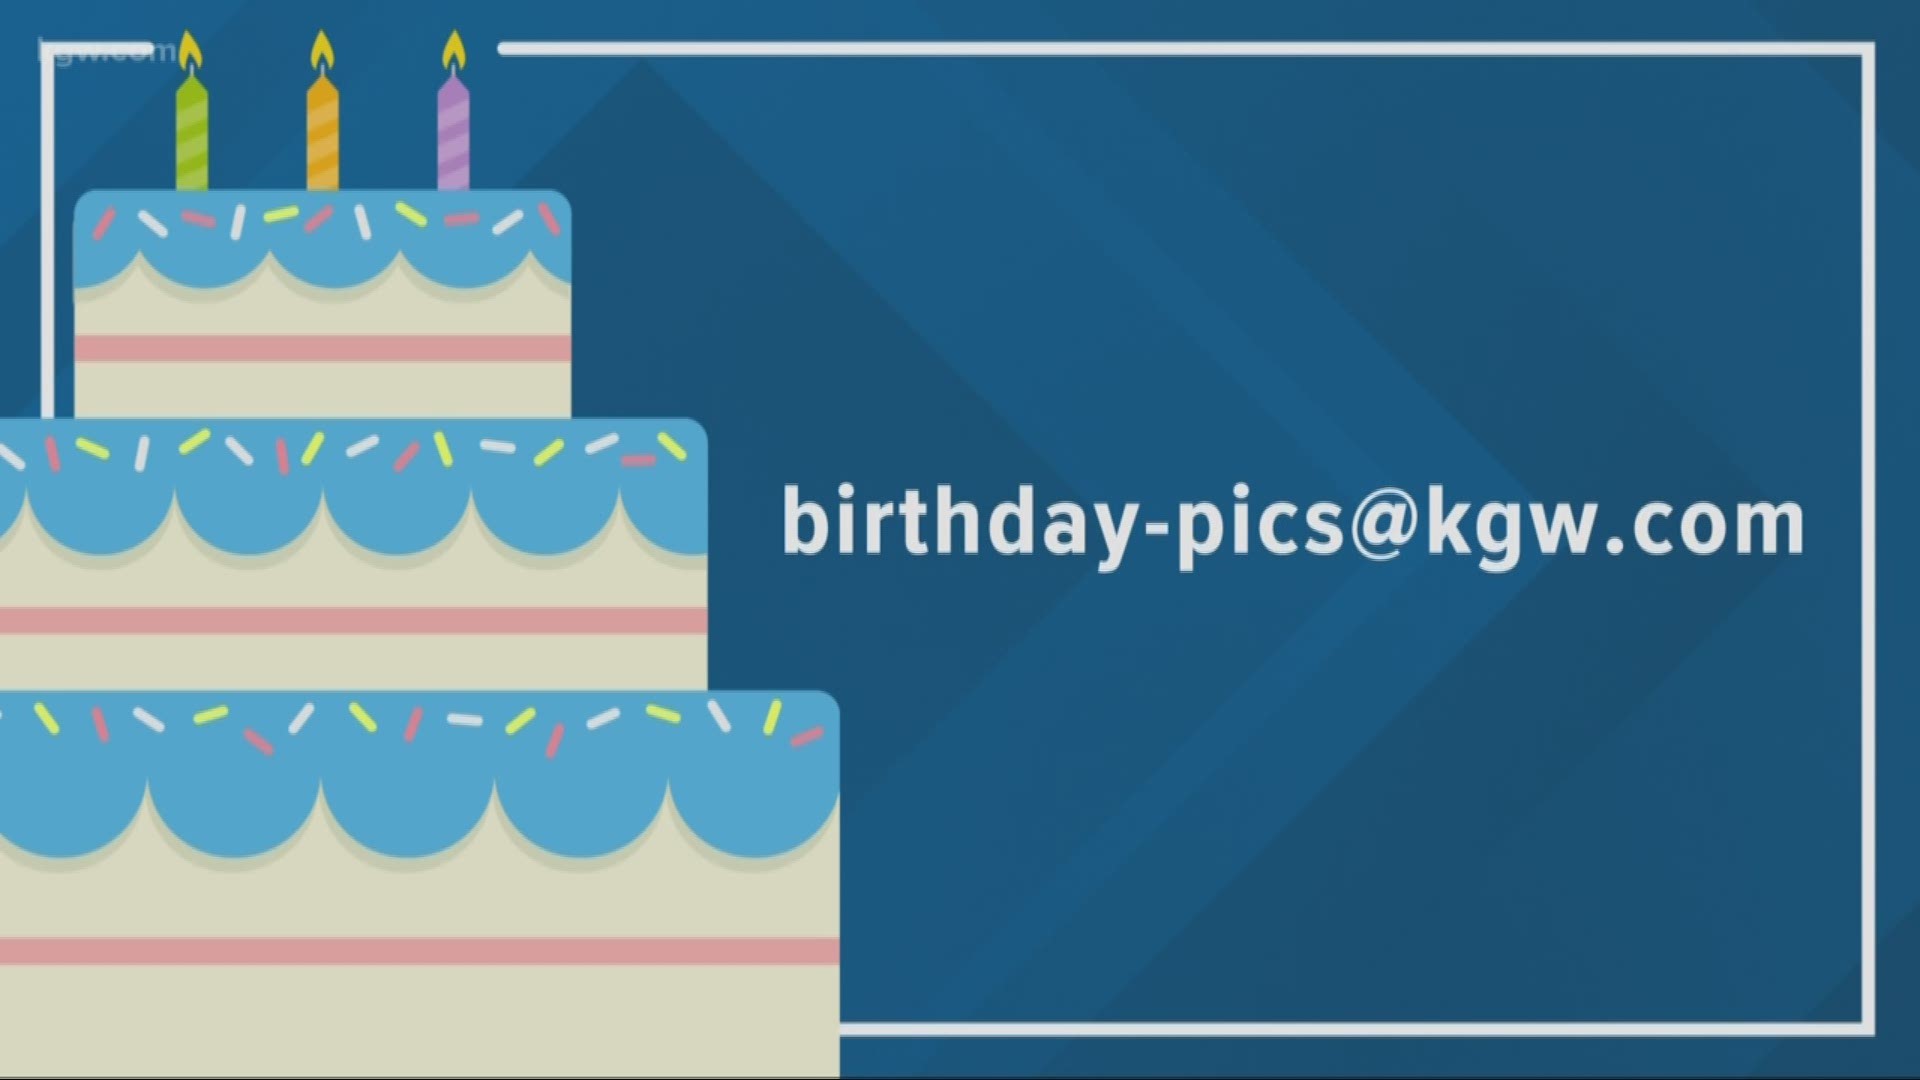 KGW viewer birthdays: 8-14-19